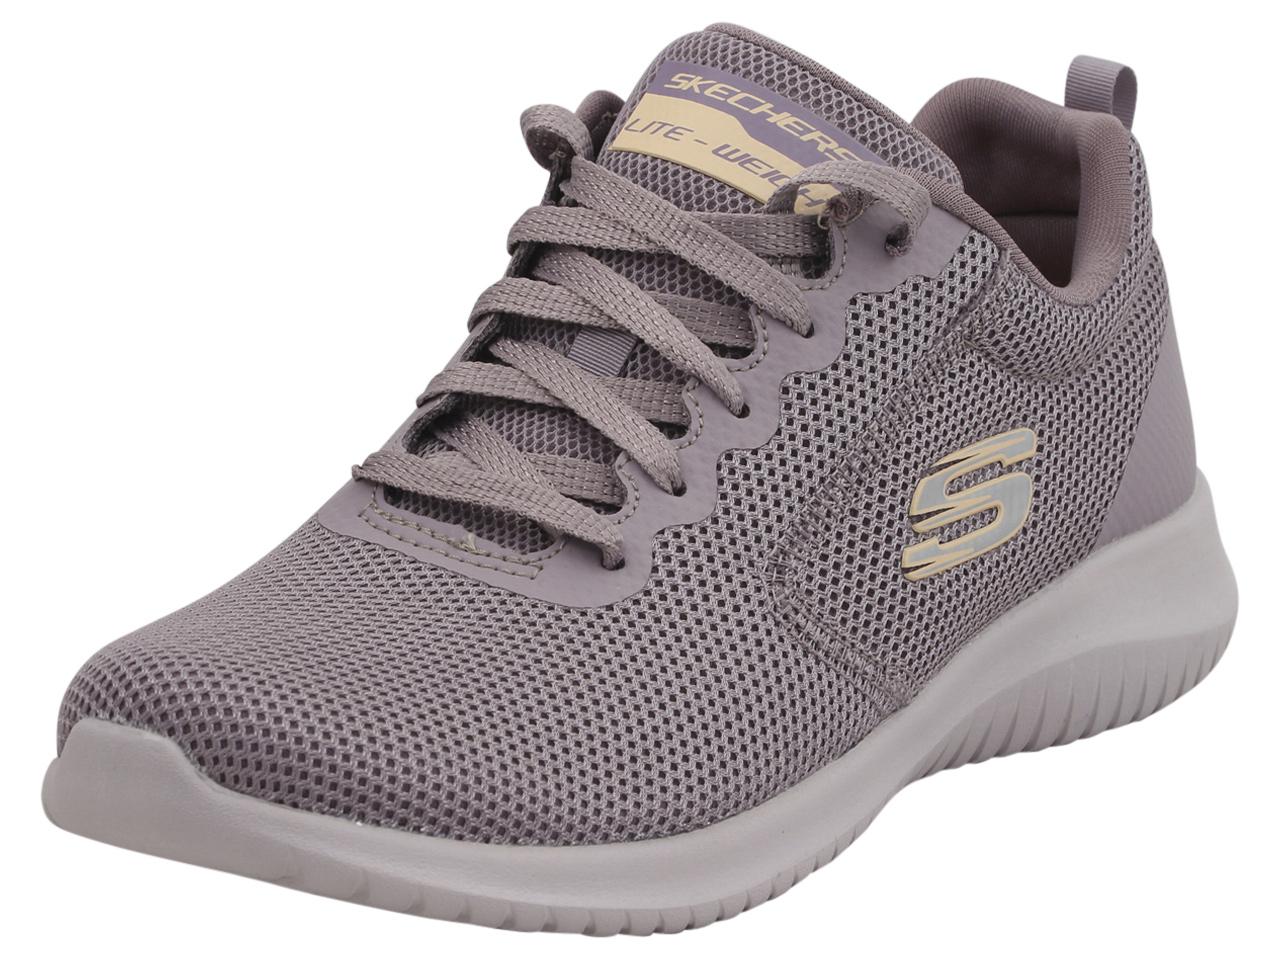 Skechers Women's Ultra Flex Free Spirits Memory Foam Sneakers Shoes - Purple - 8.5 B(M) US